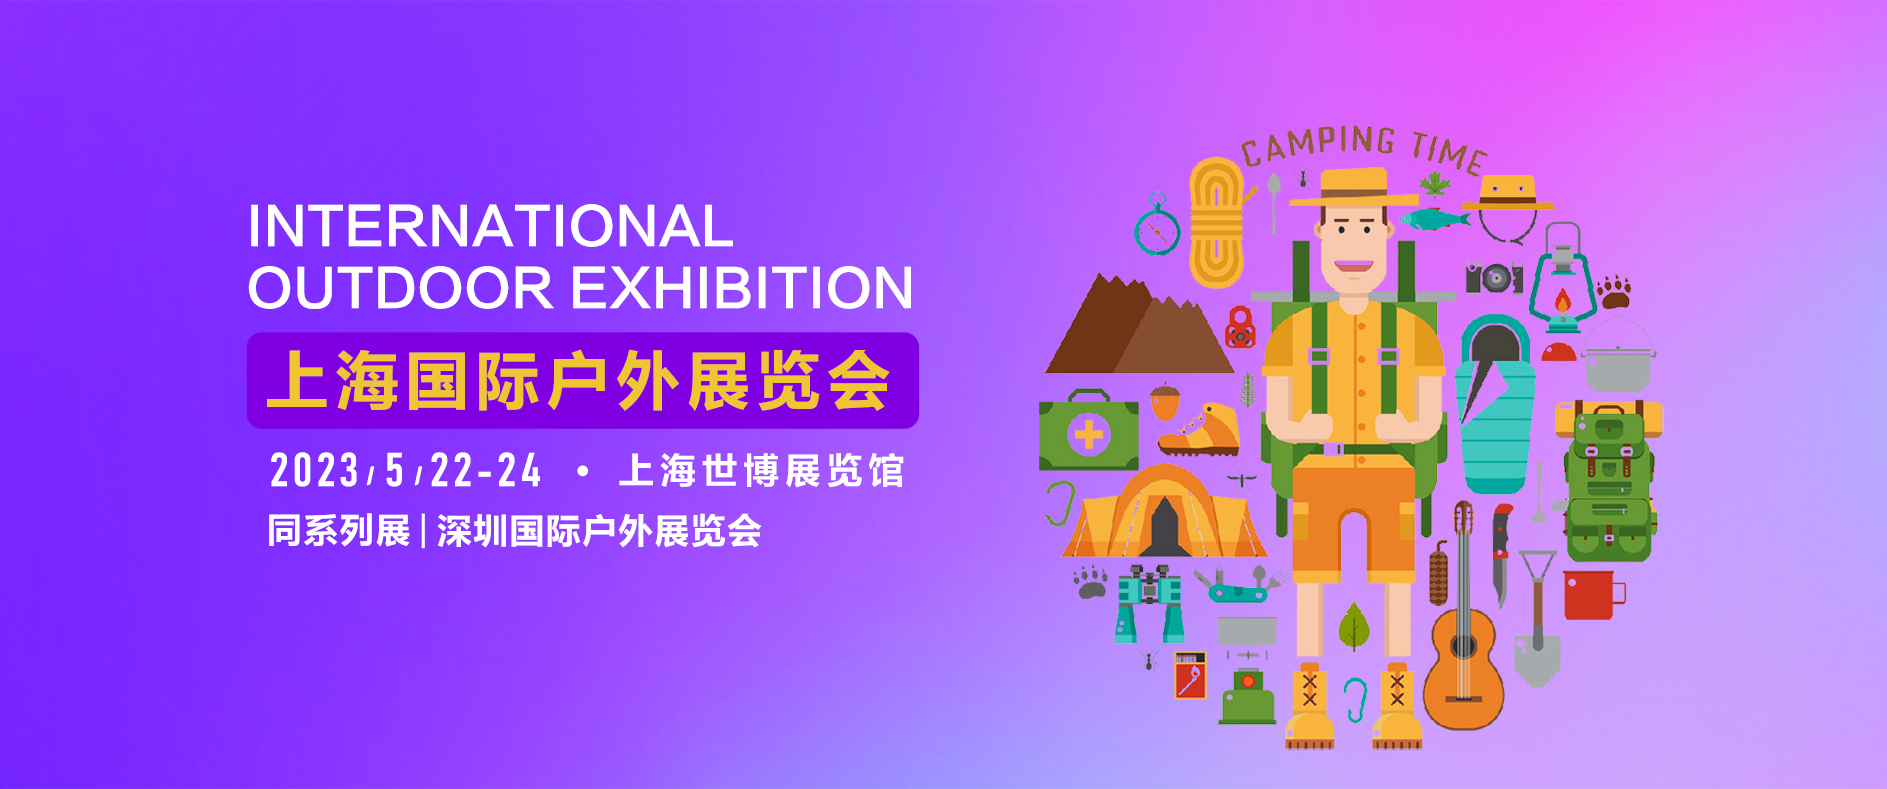 2023年COSP上海国际户外露营装备运动用品展览会